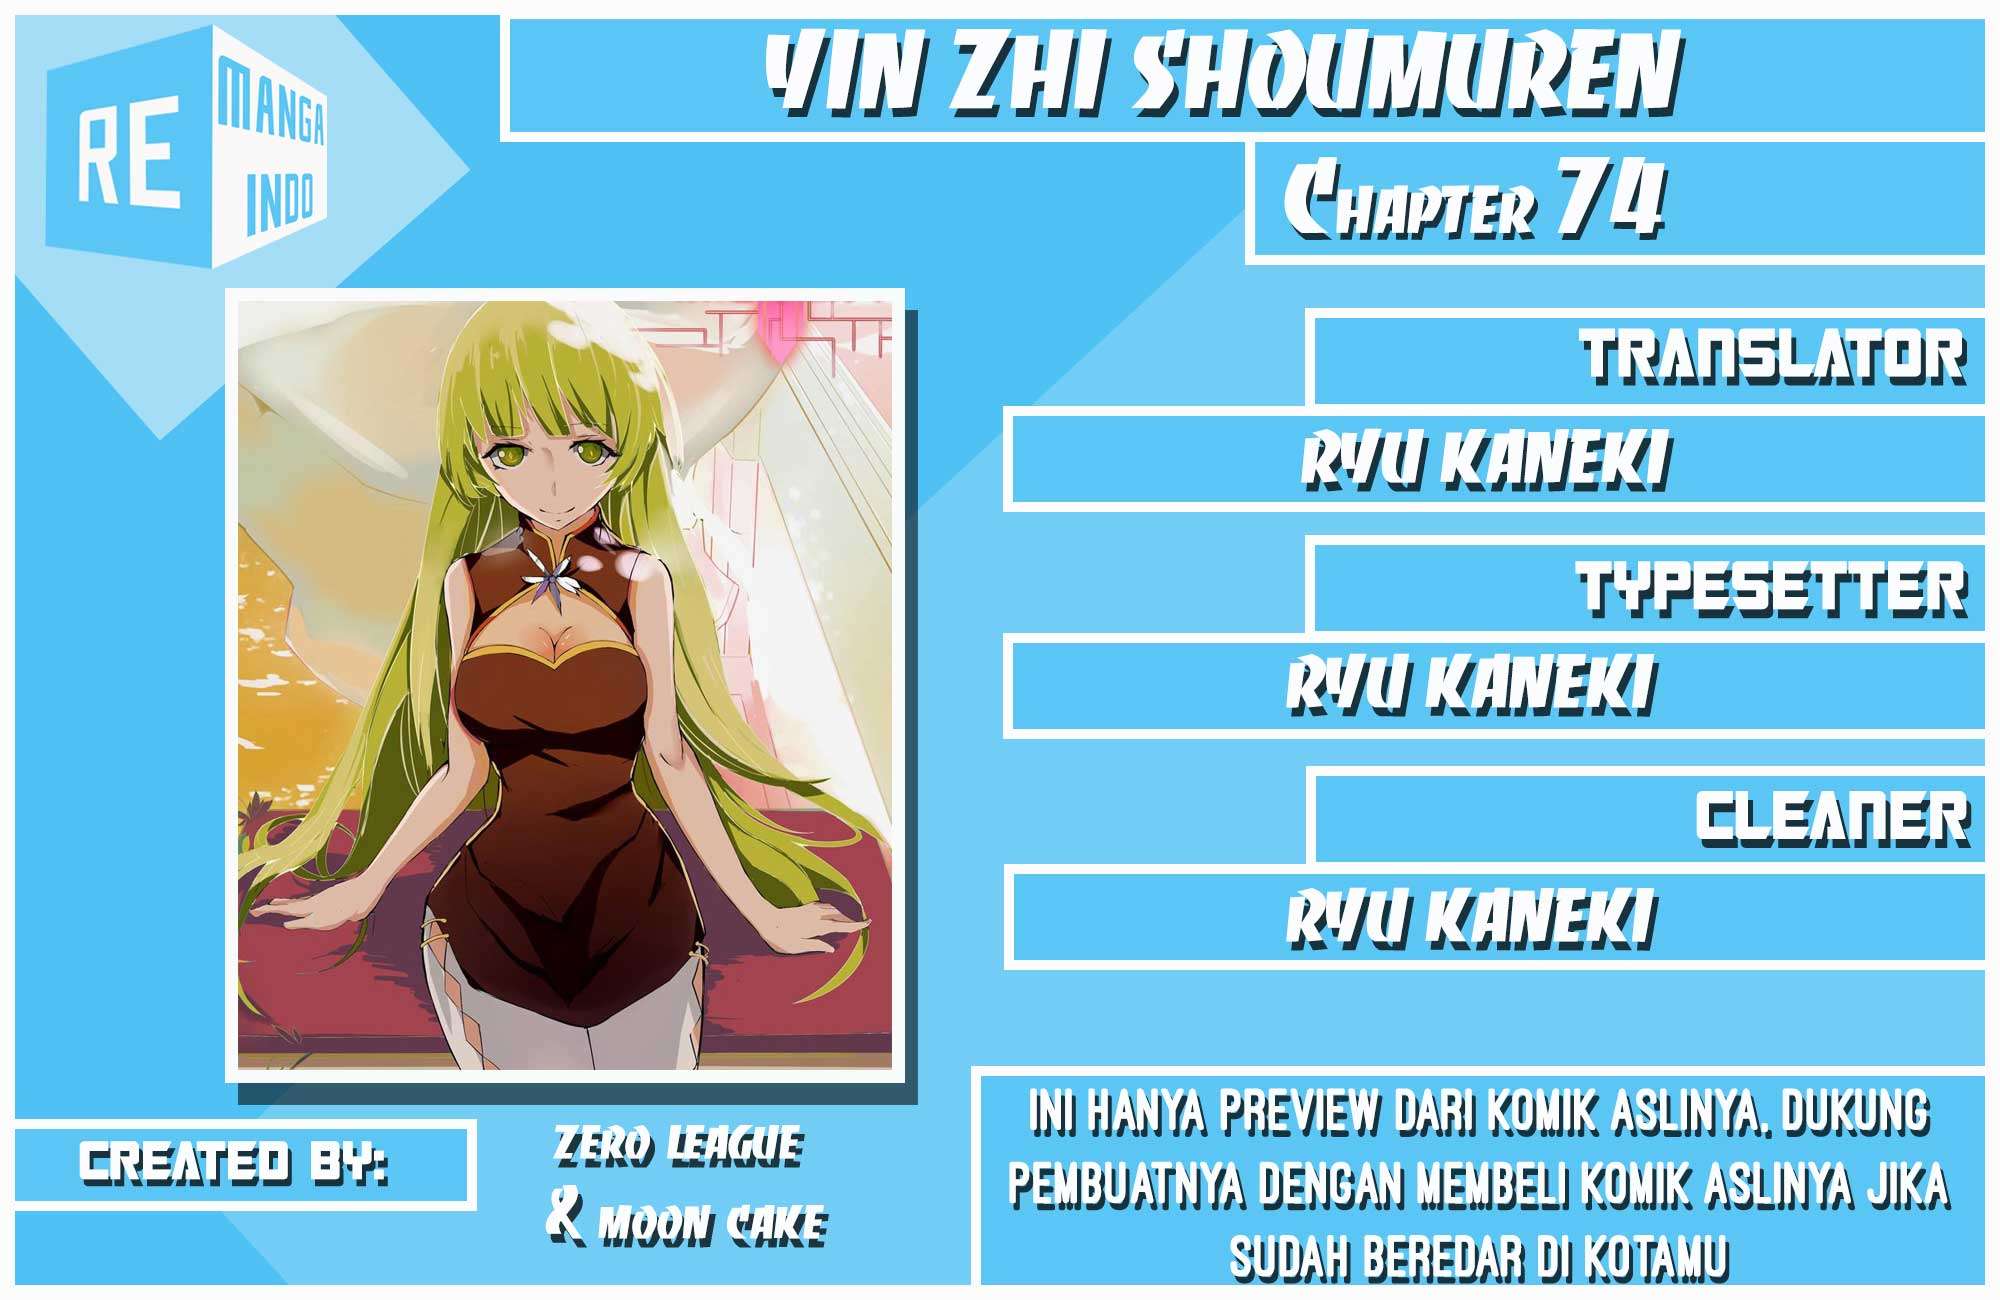 Yin Zhi Shoumuren Chapter 74 1